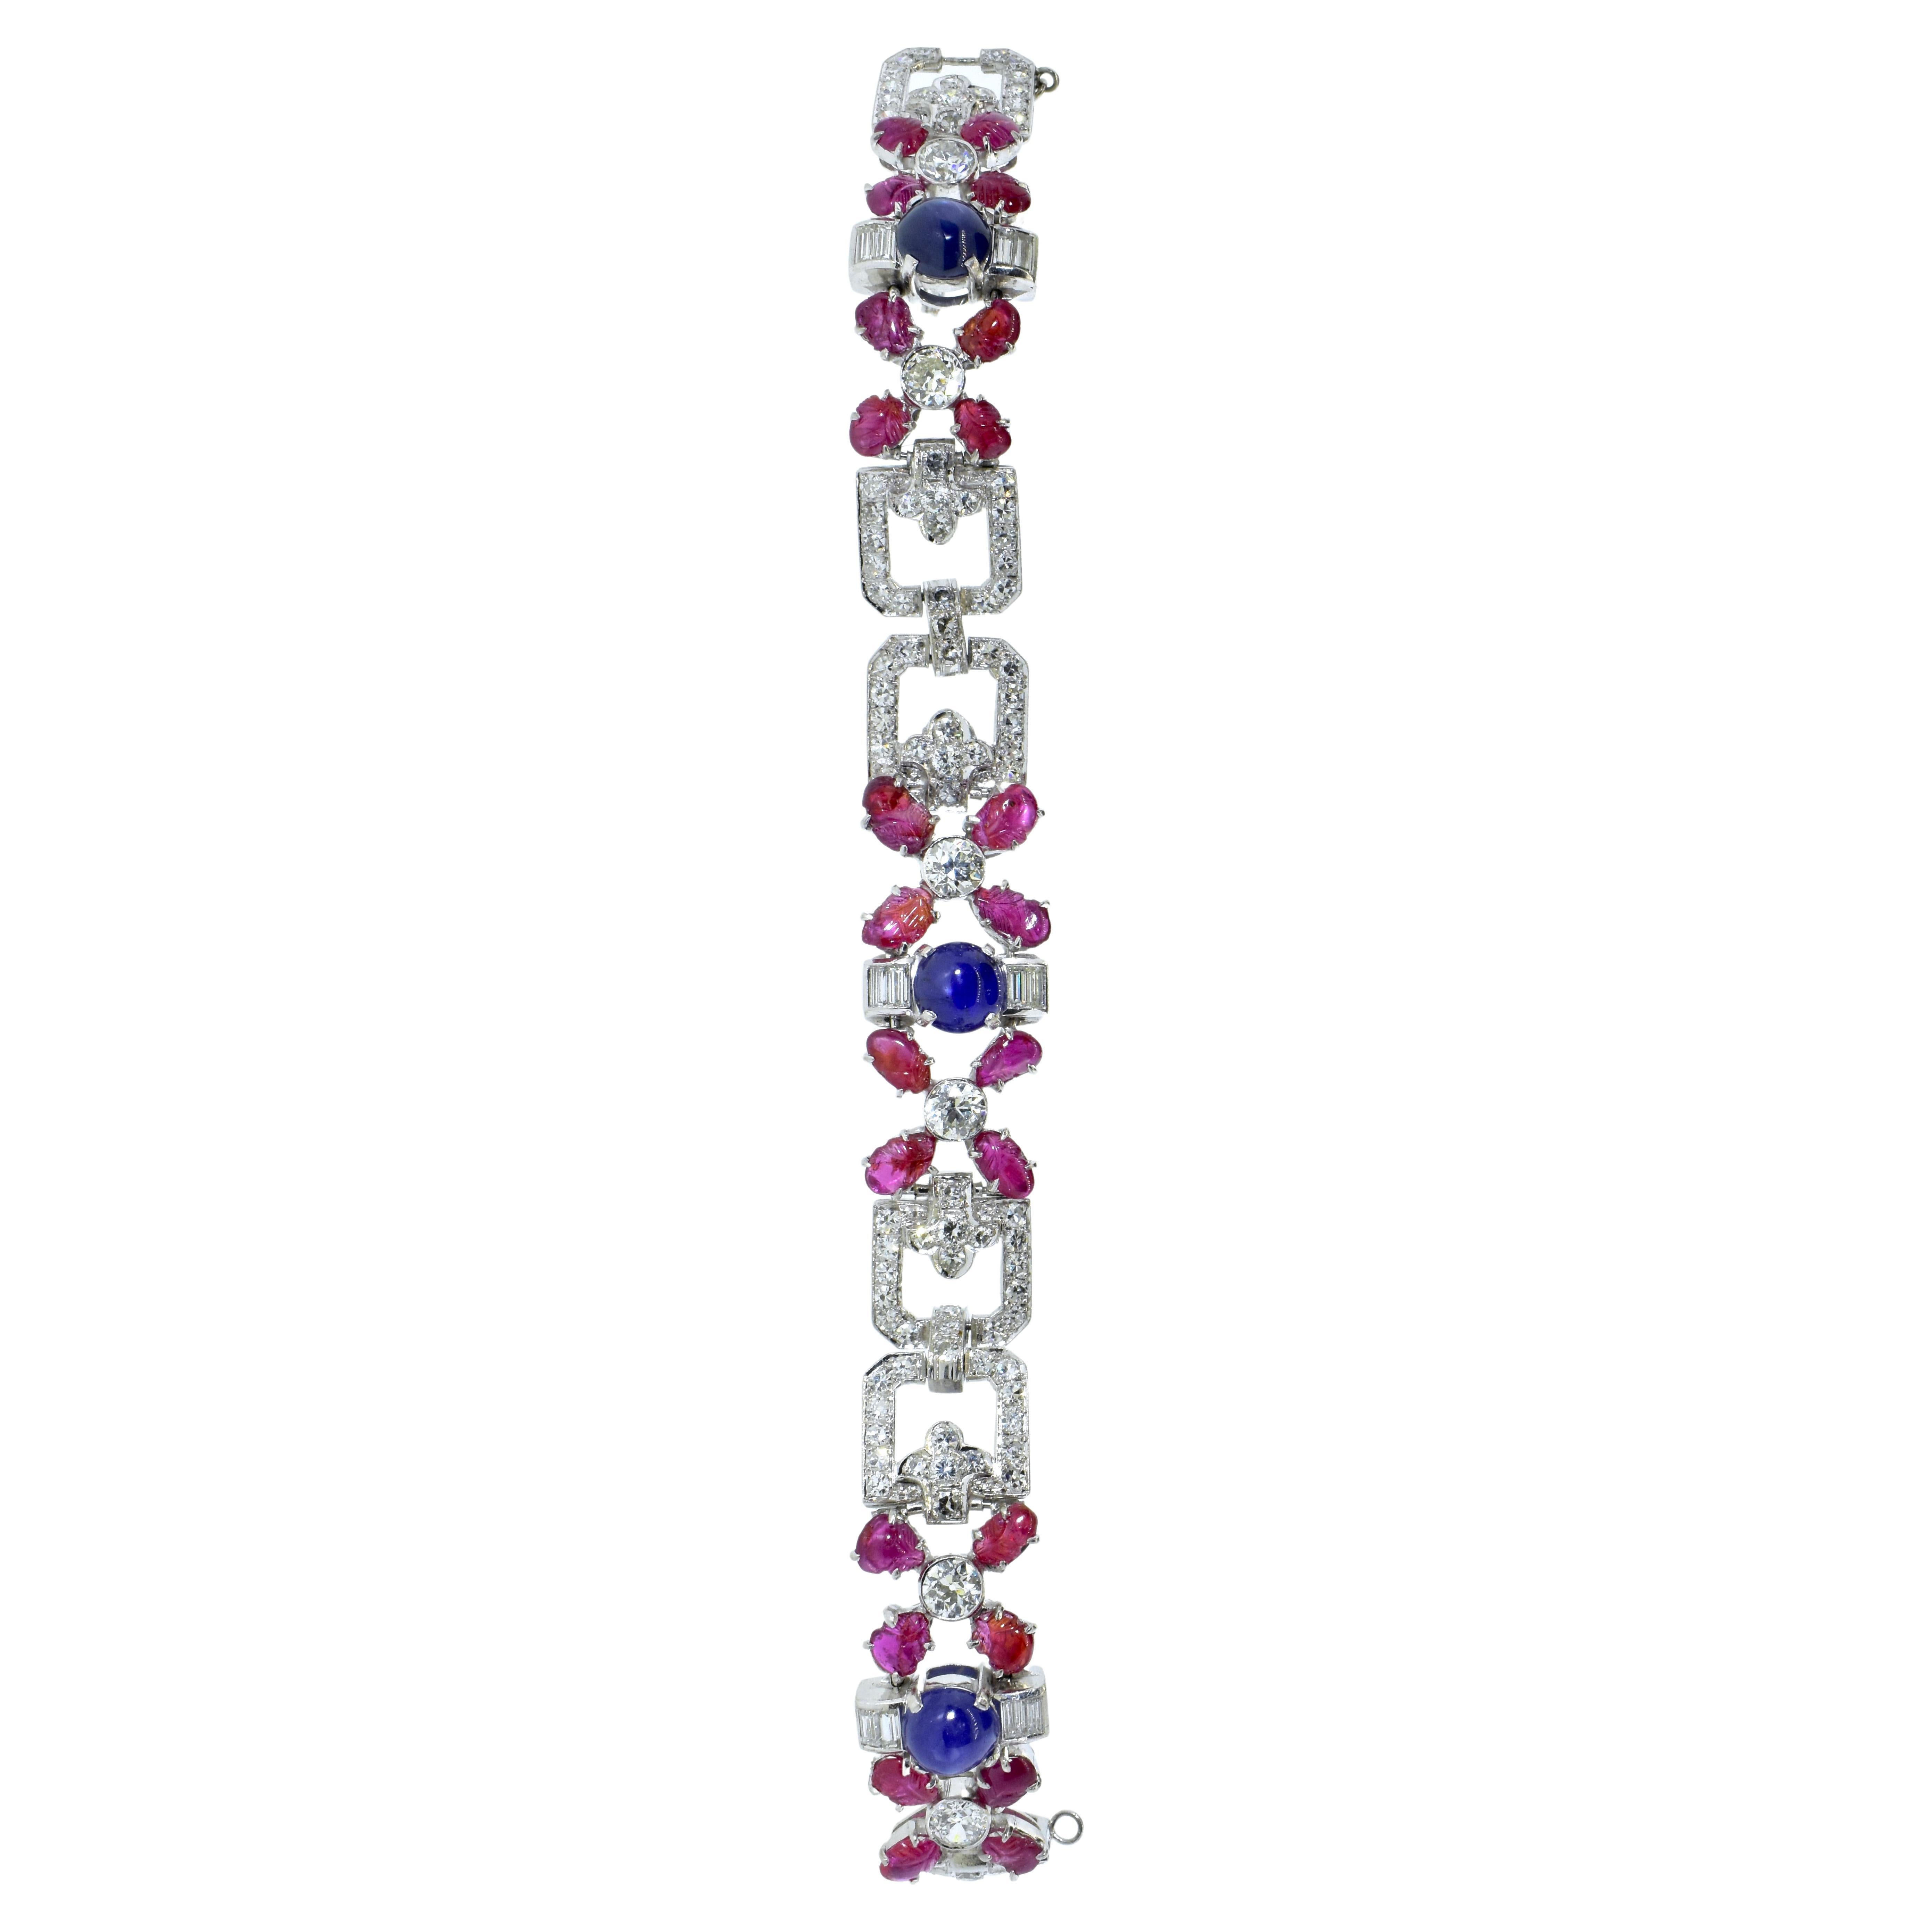 Tutti Frutti Art Deco Antique Diamond, Ruby & Sapphire Plat, Bracelet circa 1922 In Excellent Condition For Sale In Aspen, CO